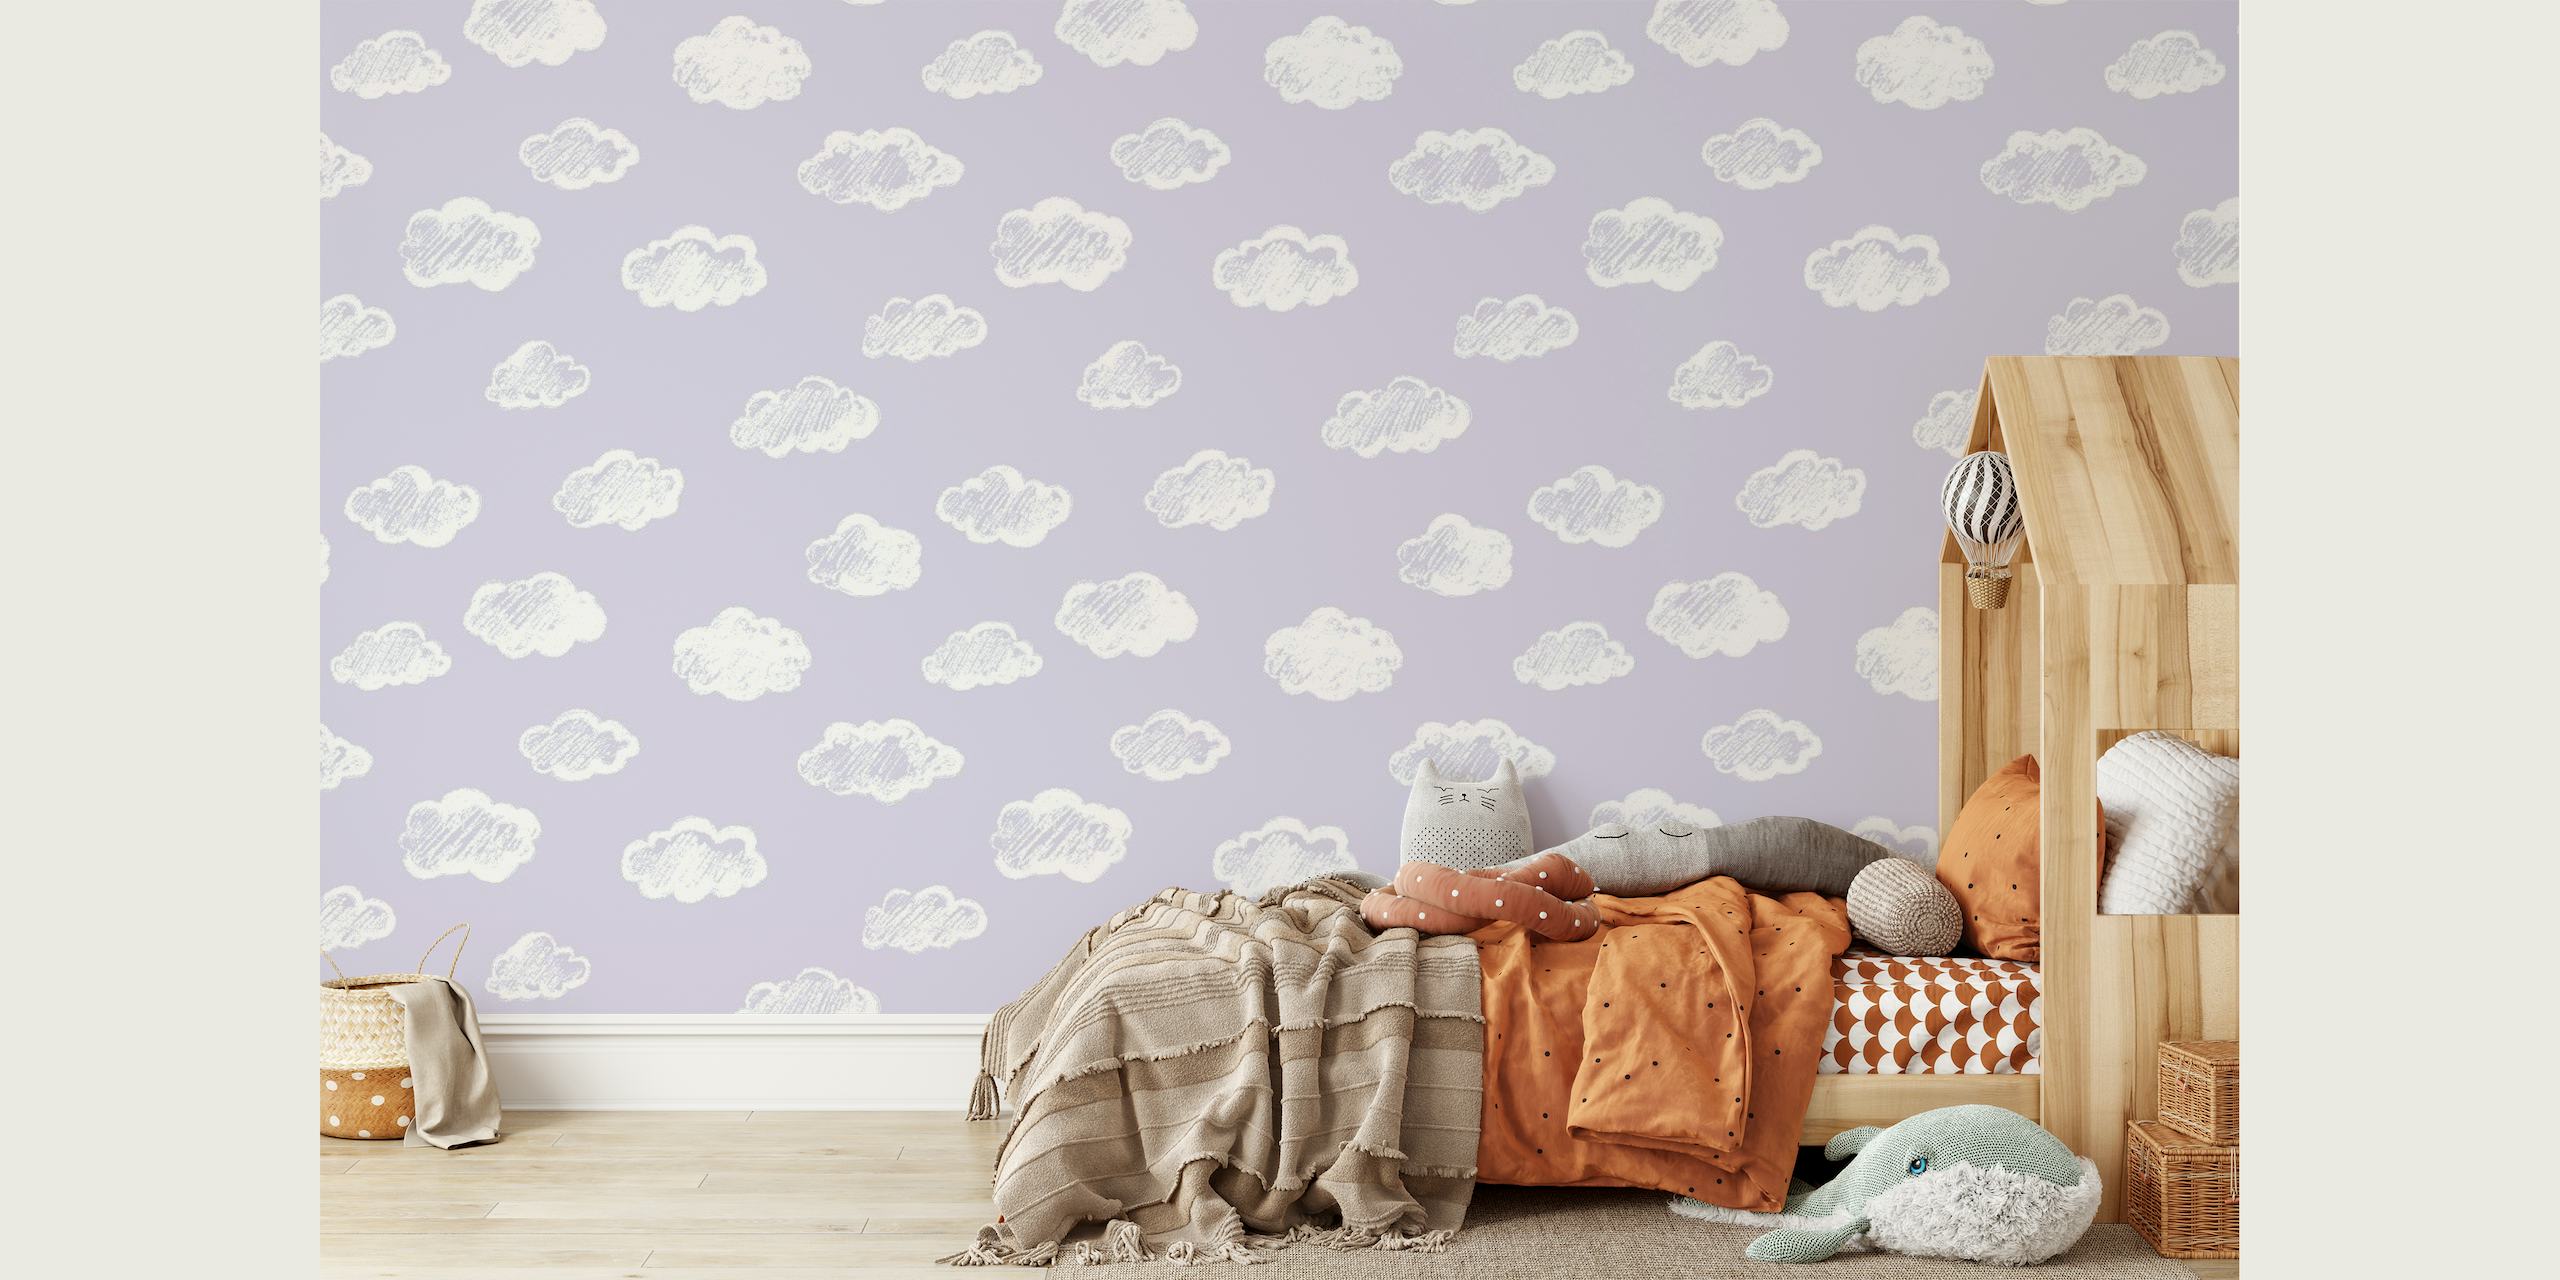 Kridtlignende hvide skyer på et blødt lavendel-baggrundsvægmaleri